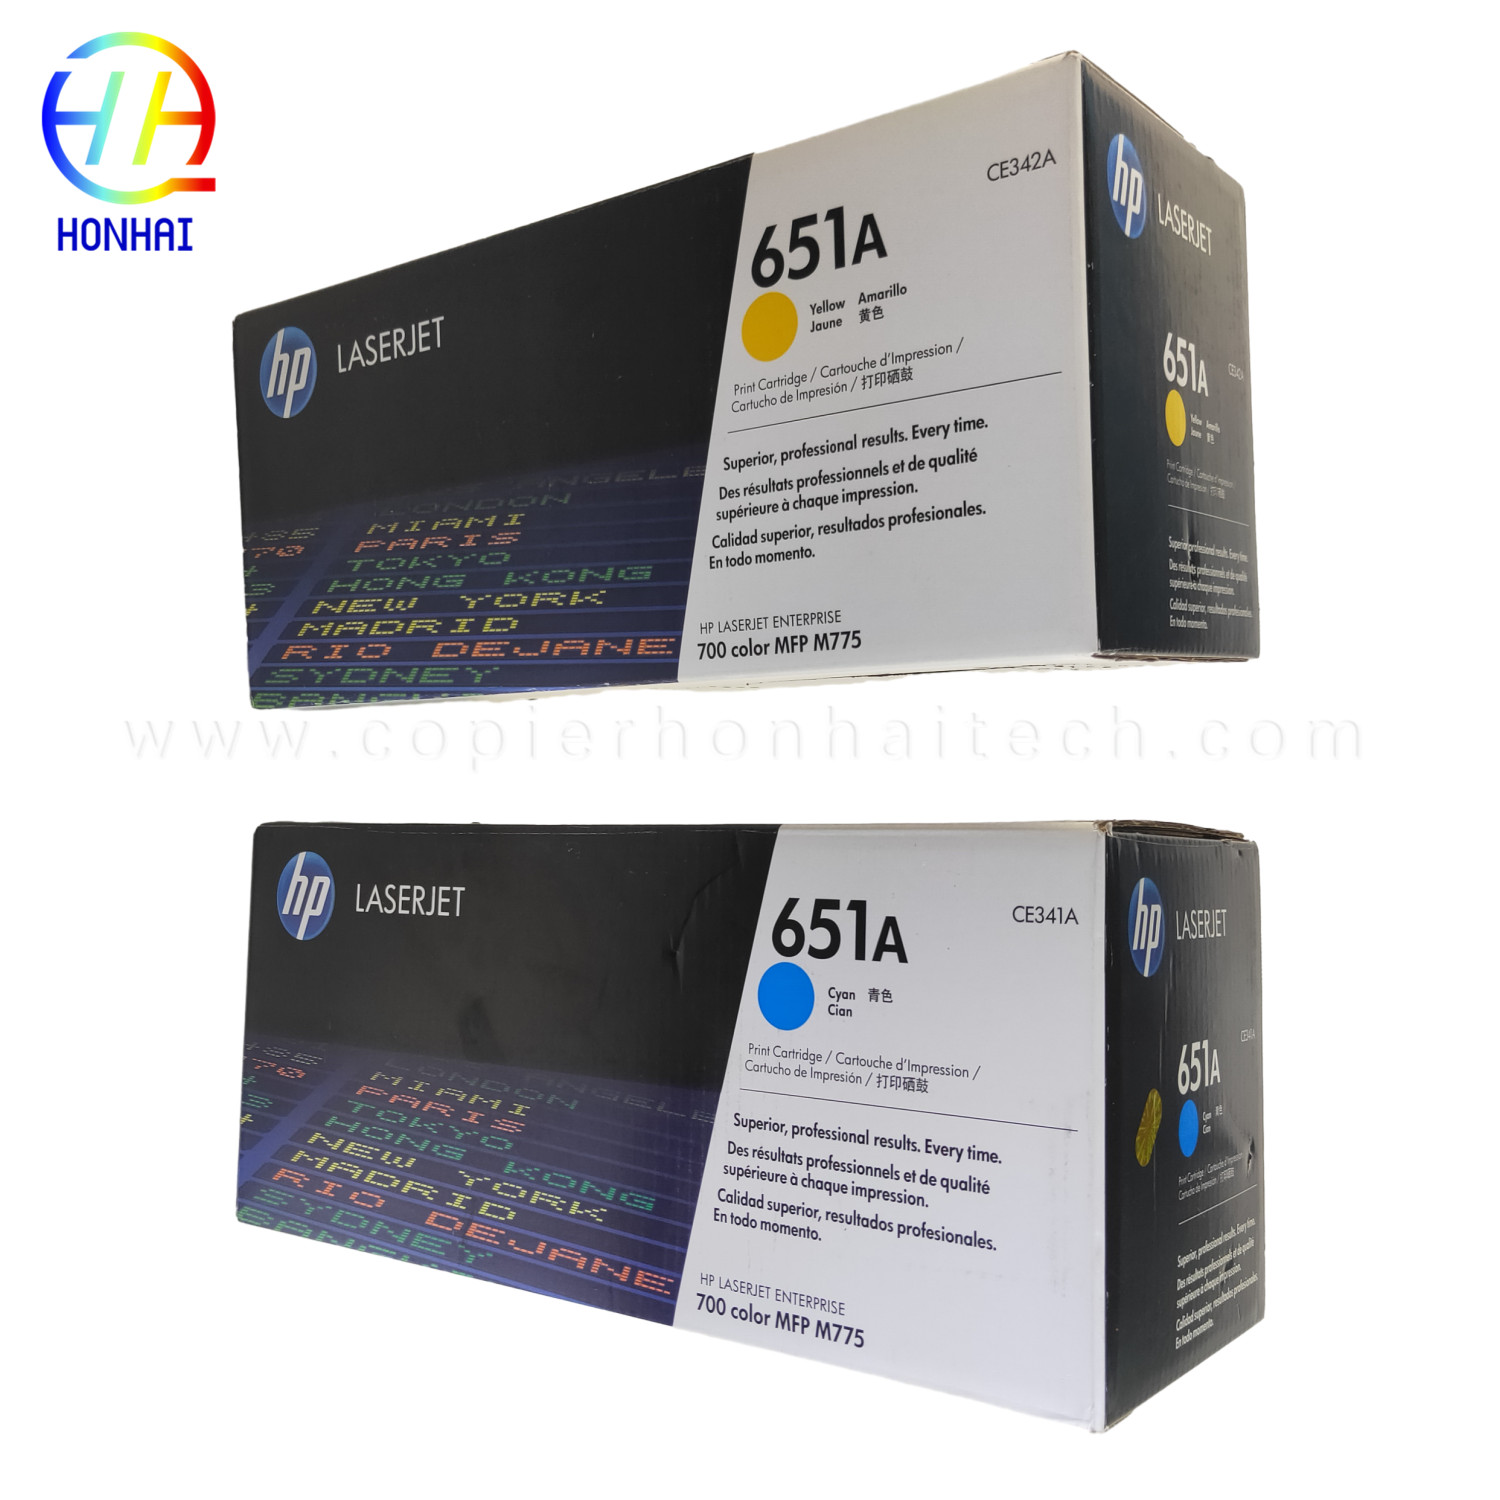 https://www.copierhonhaitech.com/original-toner-cartridge-for-hp-laserjet-enterprise-700-color-mfp-m775-series-651a-ce341a-cyan-ce342ac-yellow-16000-page-product/